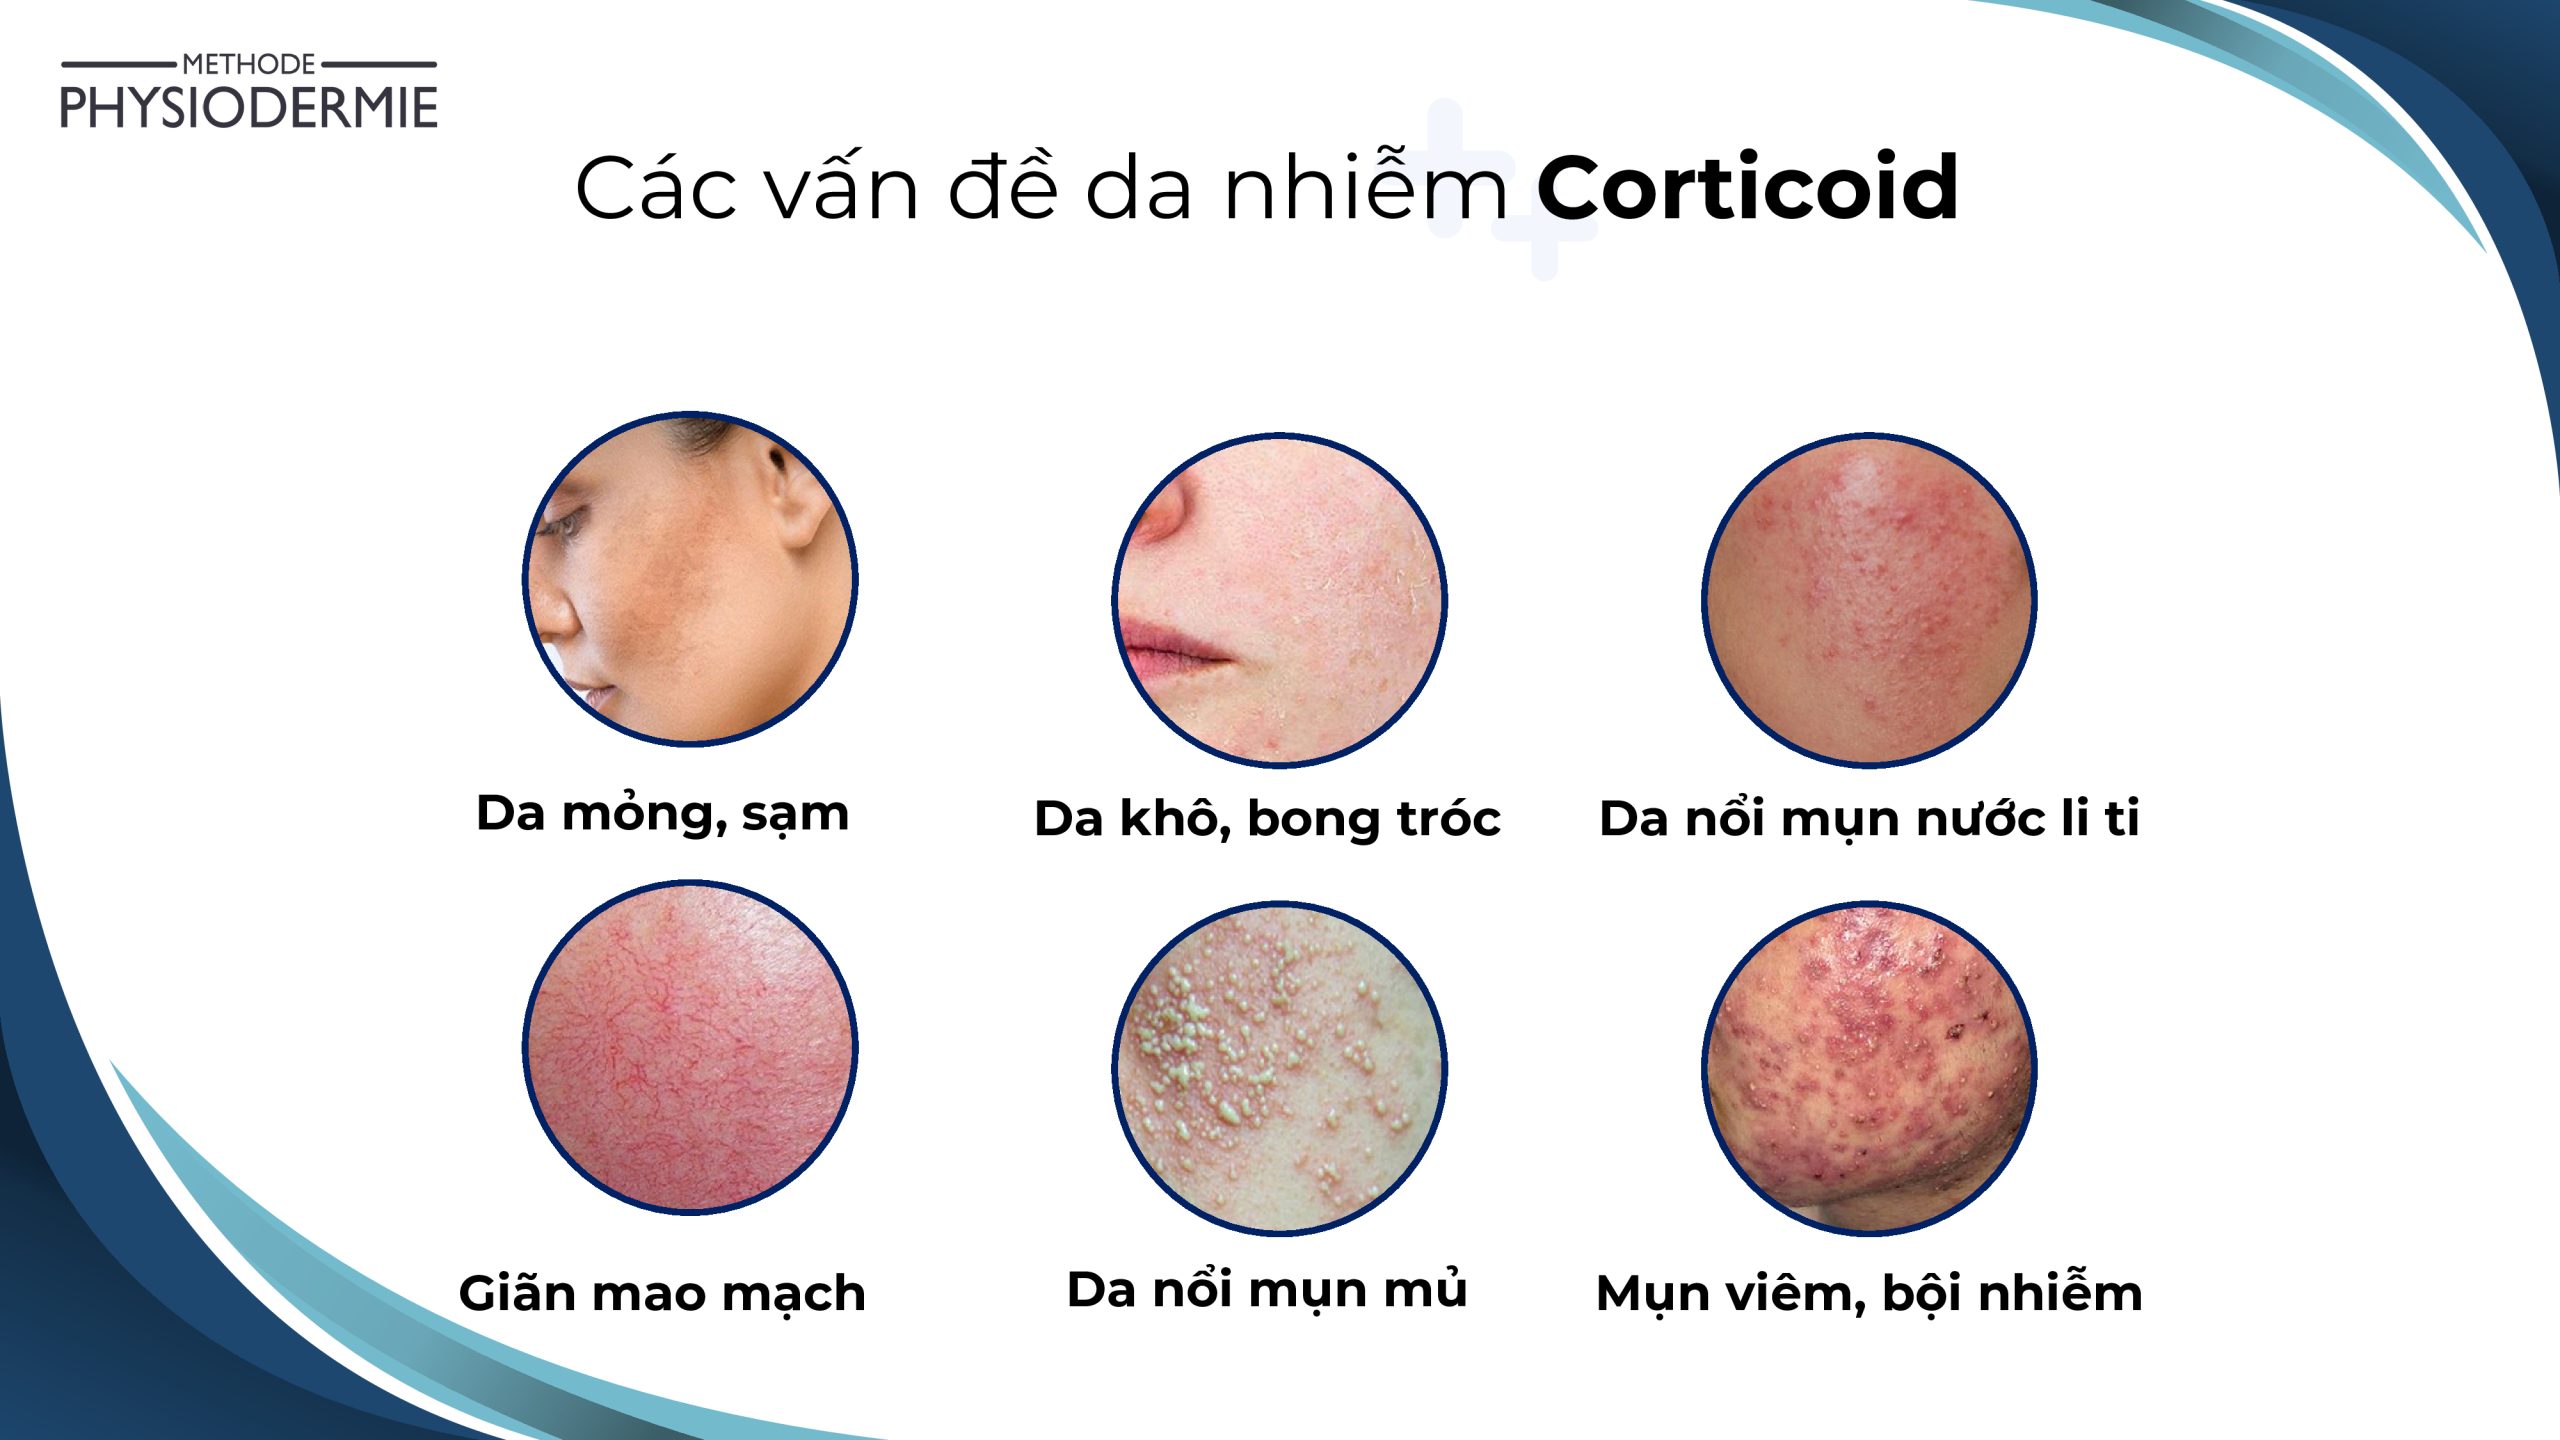 Da bị nhiễm Corticoid do sử dụng không đúng cách sẽ gây tổn thương hàng rào bảo vệ da tự nhiên, biểu hiện có thể nhìn thấy như da khô, nổi mụn,...